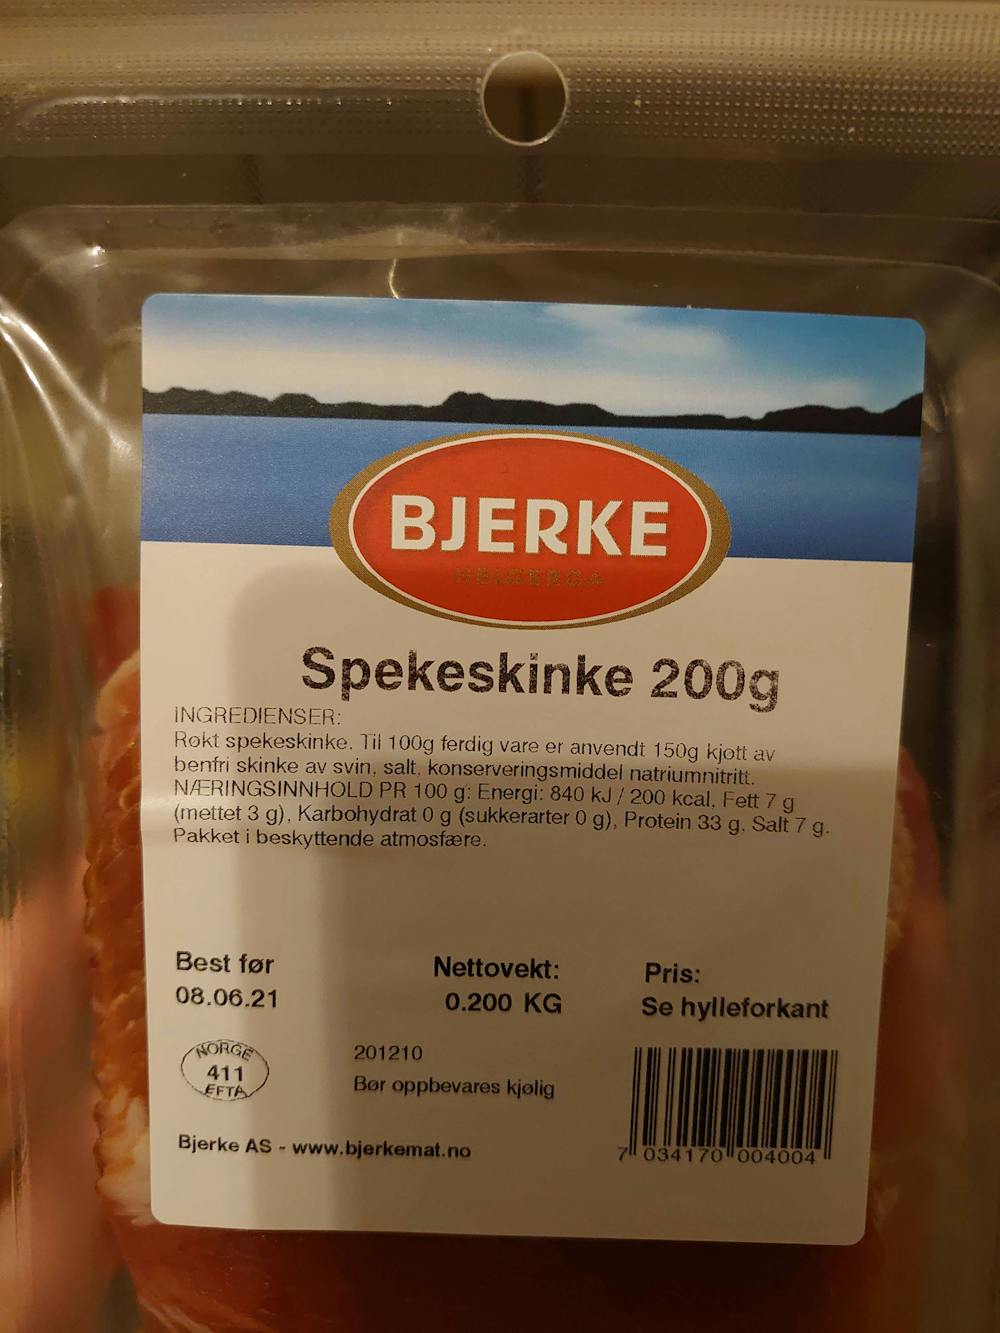 Ingredienslisten til Spekeskinke, Bjerke